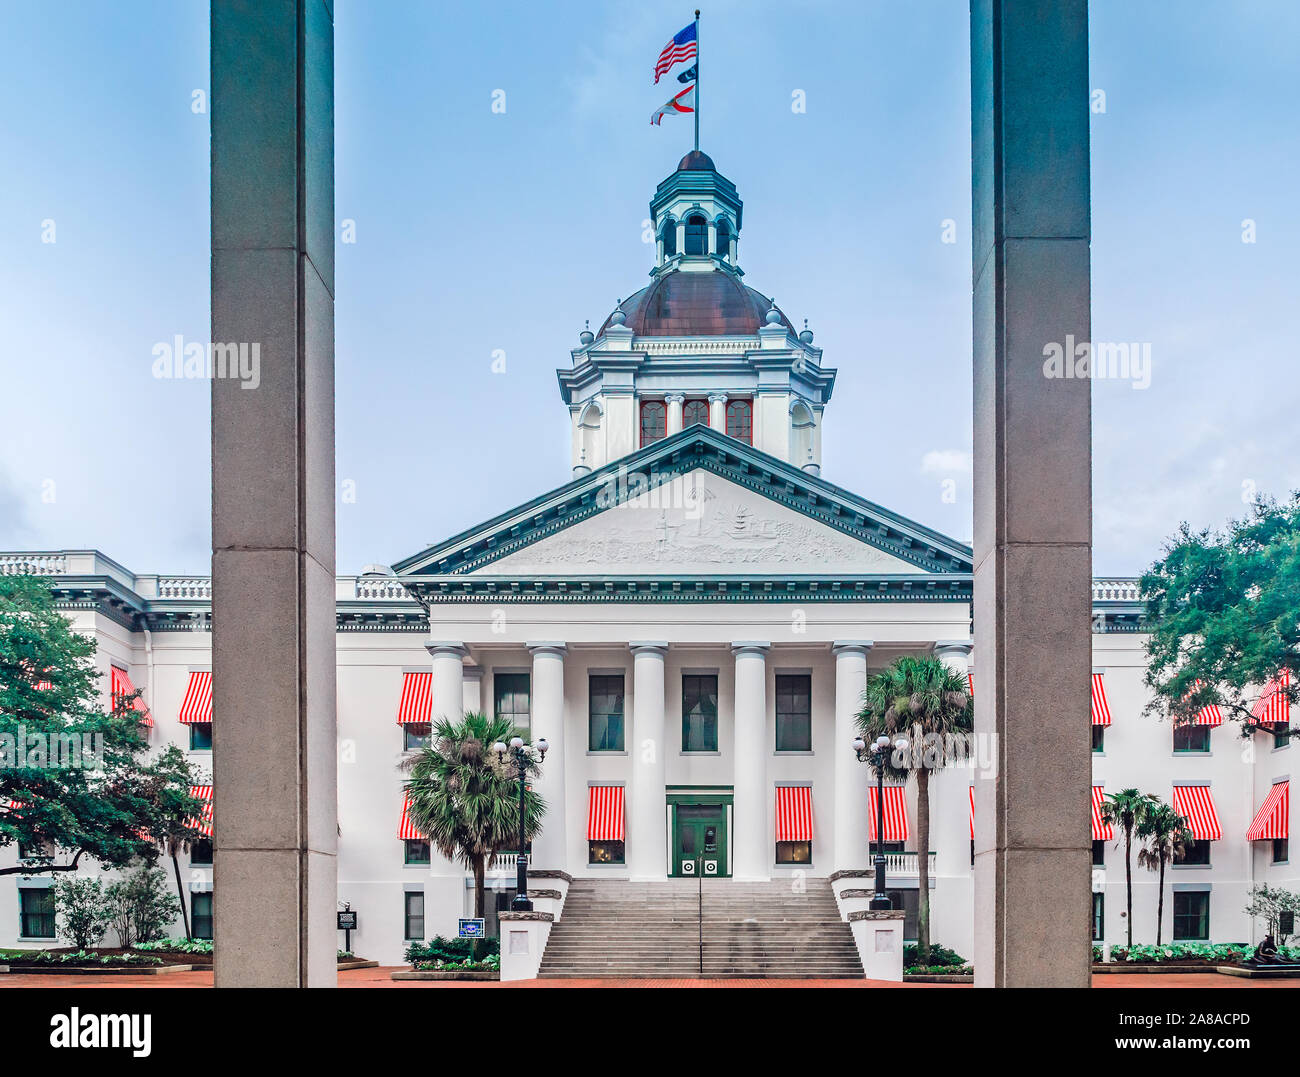 La vecchia Florida State Capitol Building è raffigurato, luglio 20, 2013, in Tallahassee, Florida. Il classico stile Revival edificio fu costruito nel 1845. Foto Stock